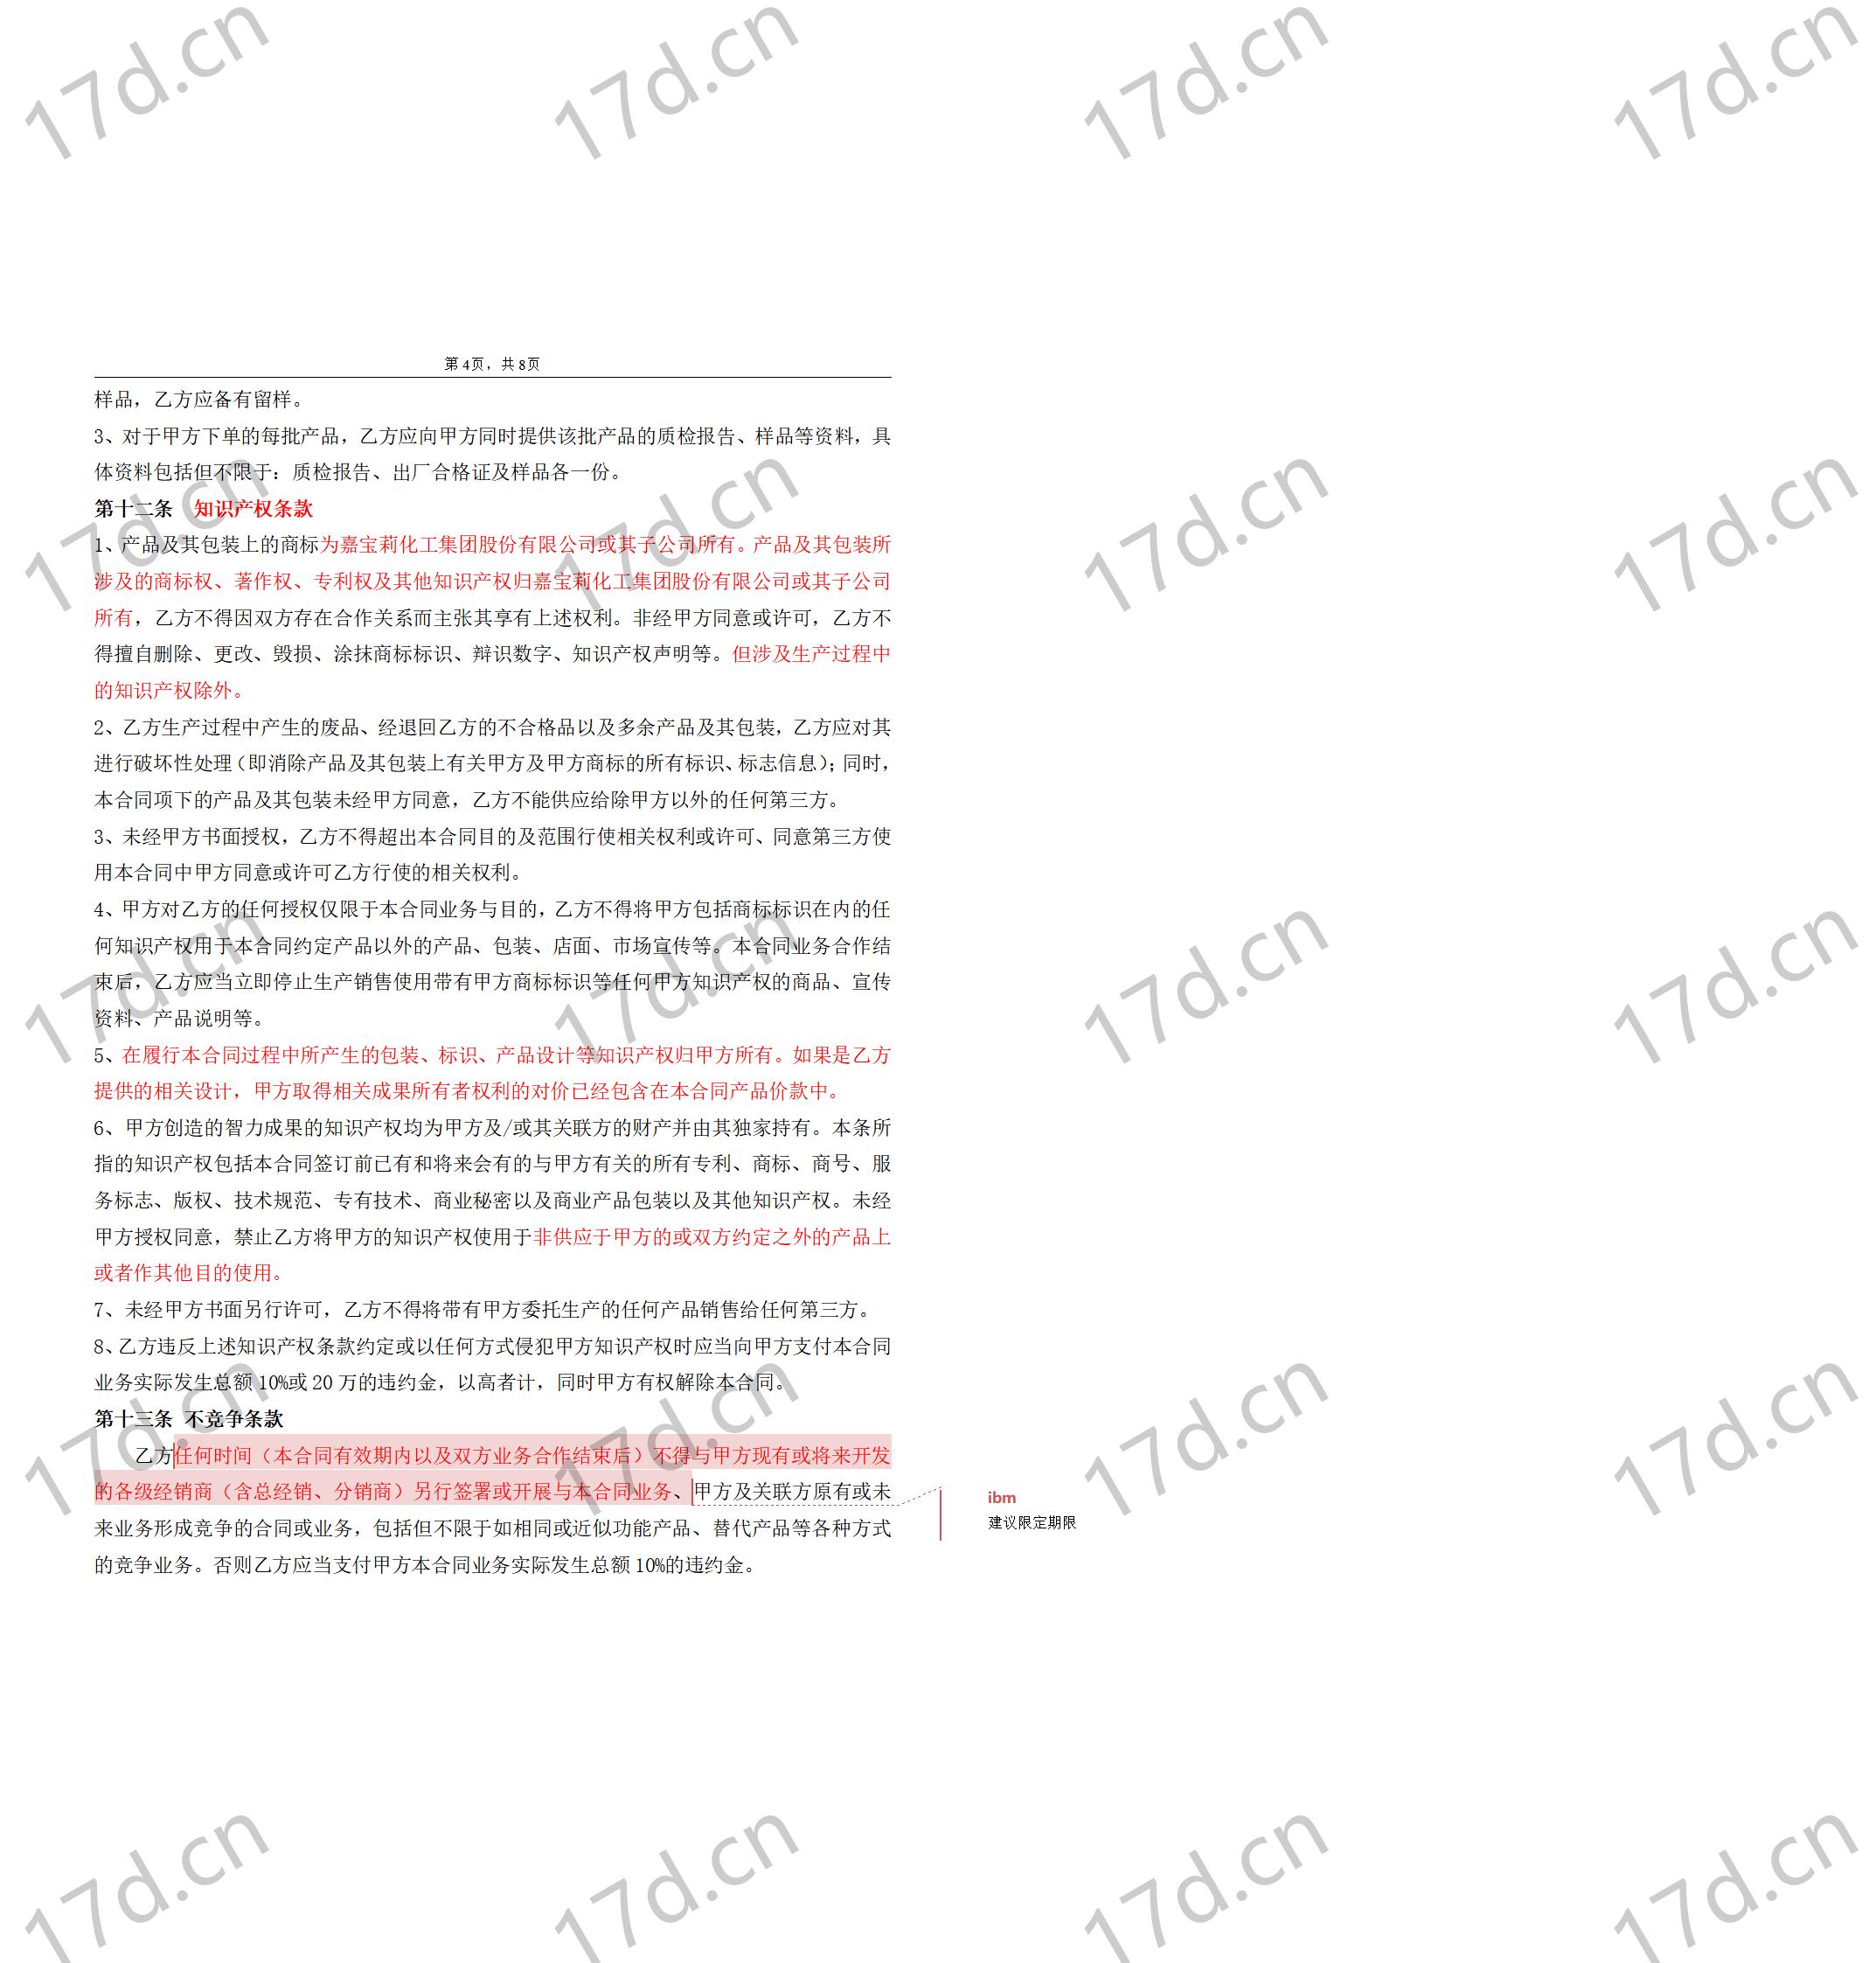 委托加工合同(OEM)2014-我方委托供应商生产加工_04.jpg